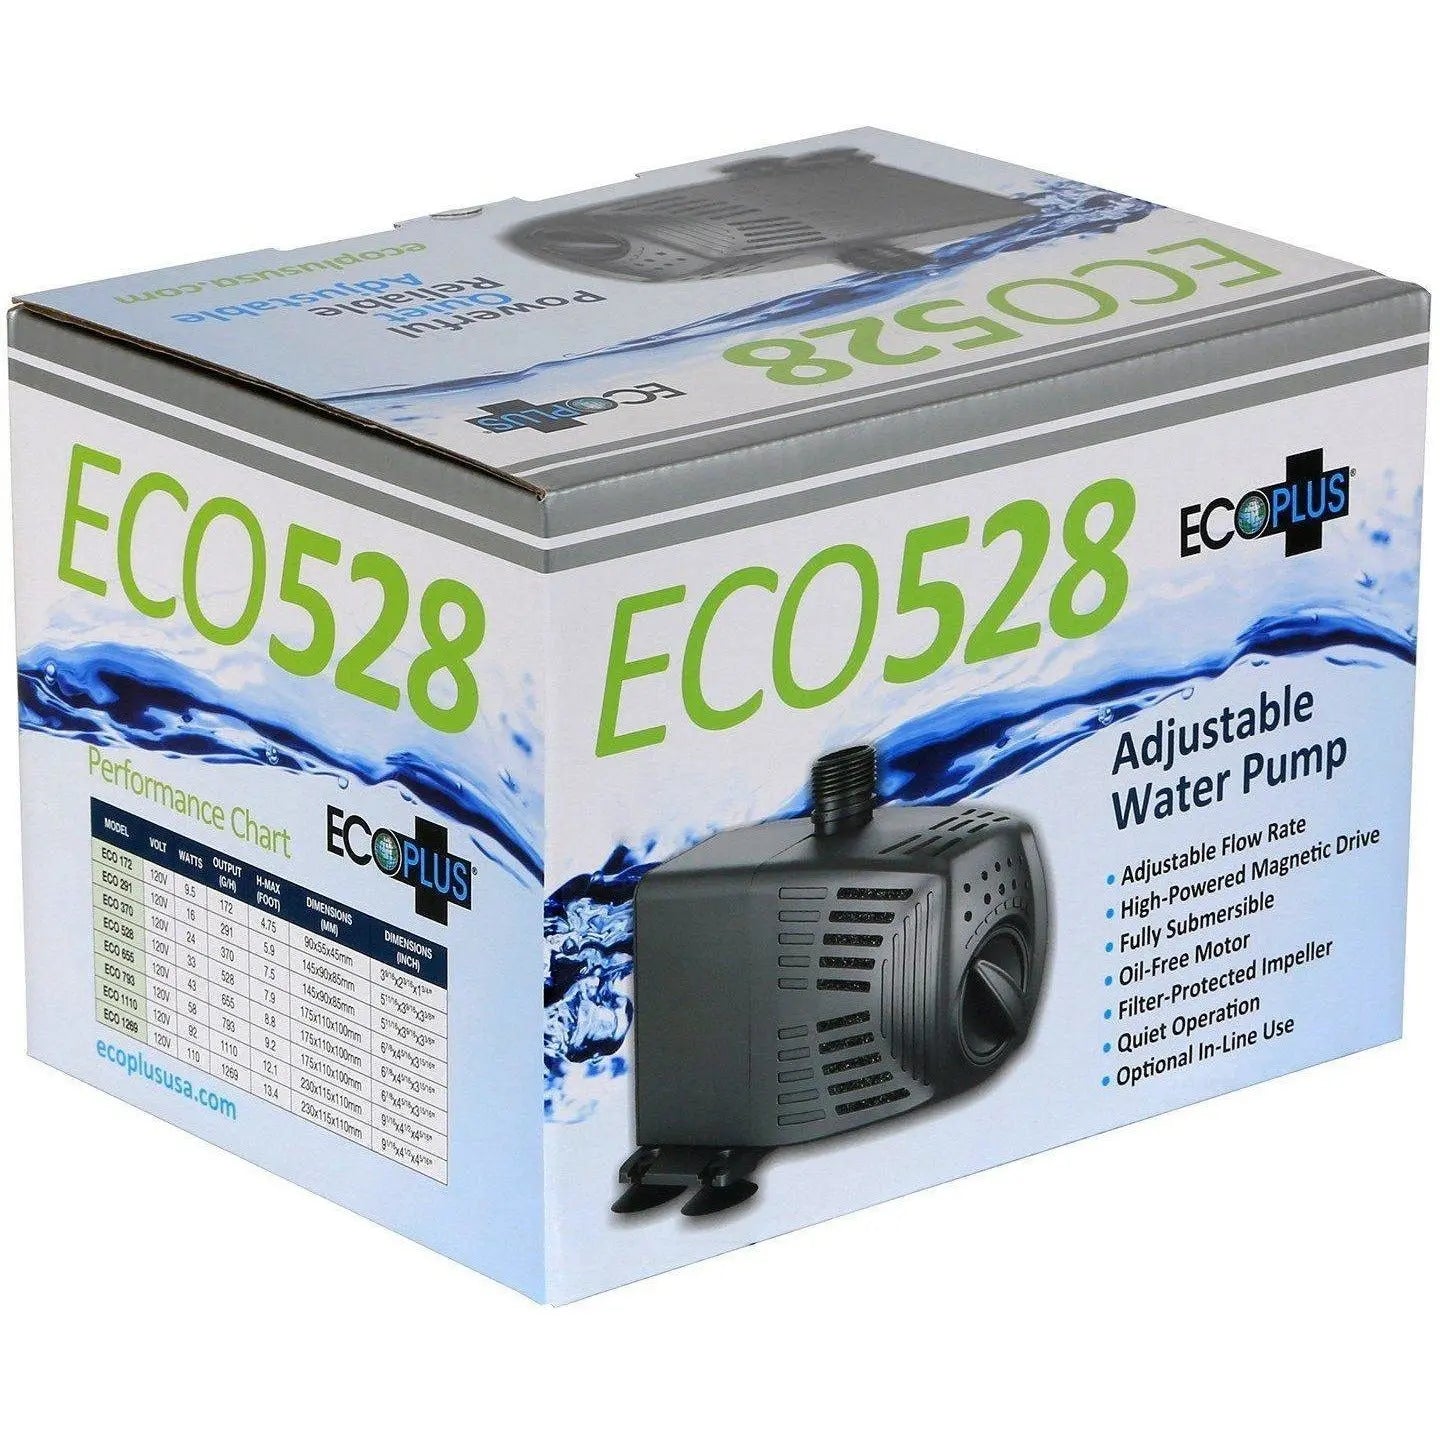 EcoPlus® Adjustable Water Pump, 528 GPH EcoPlus